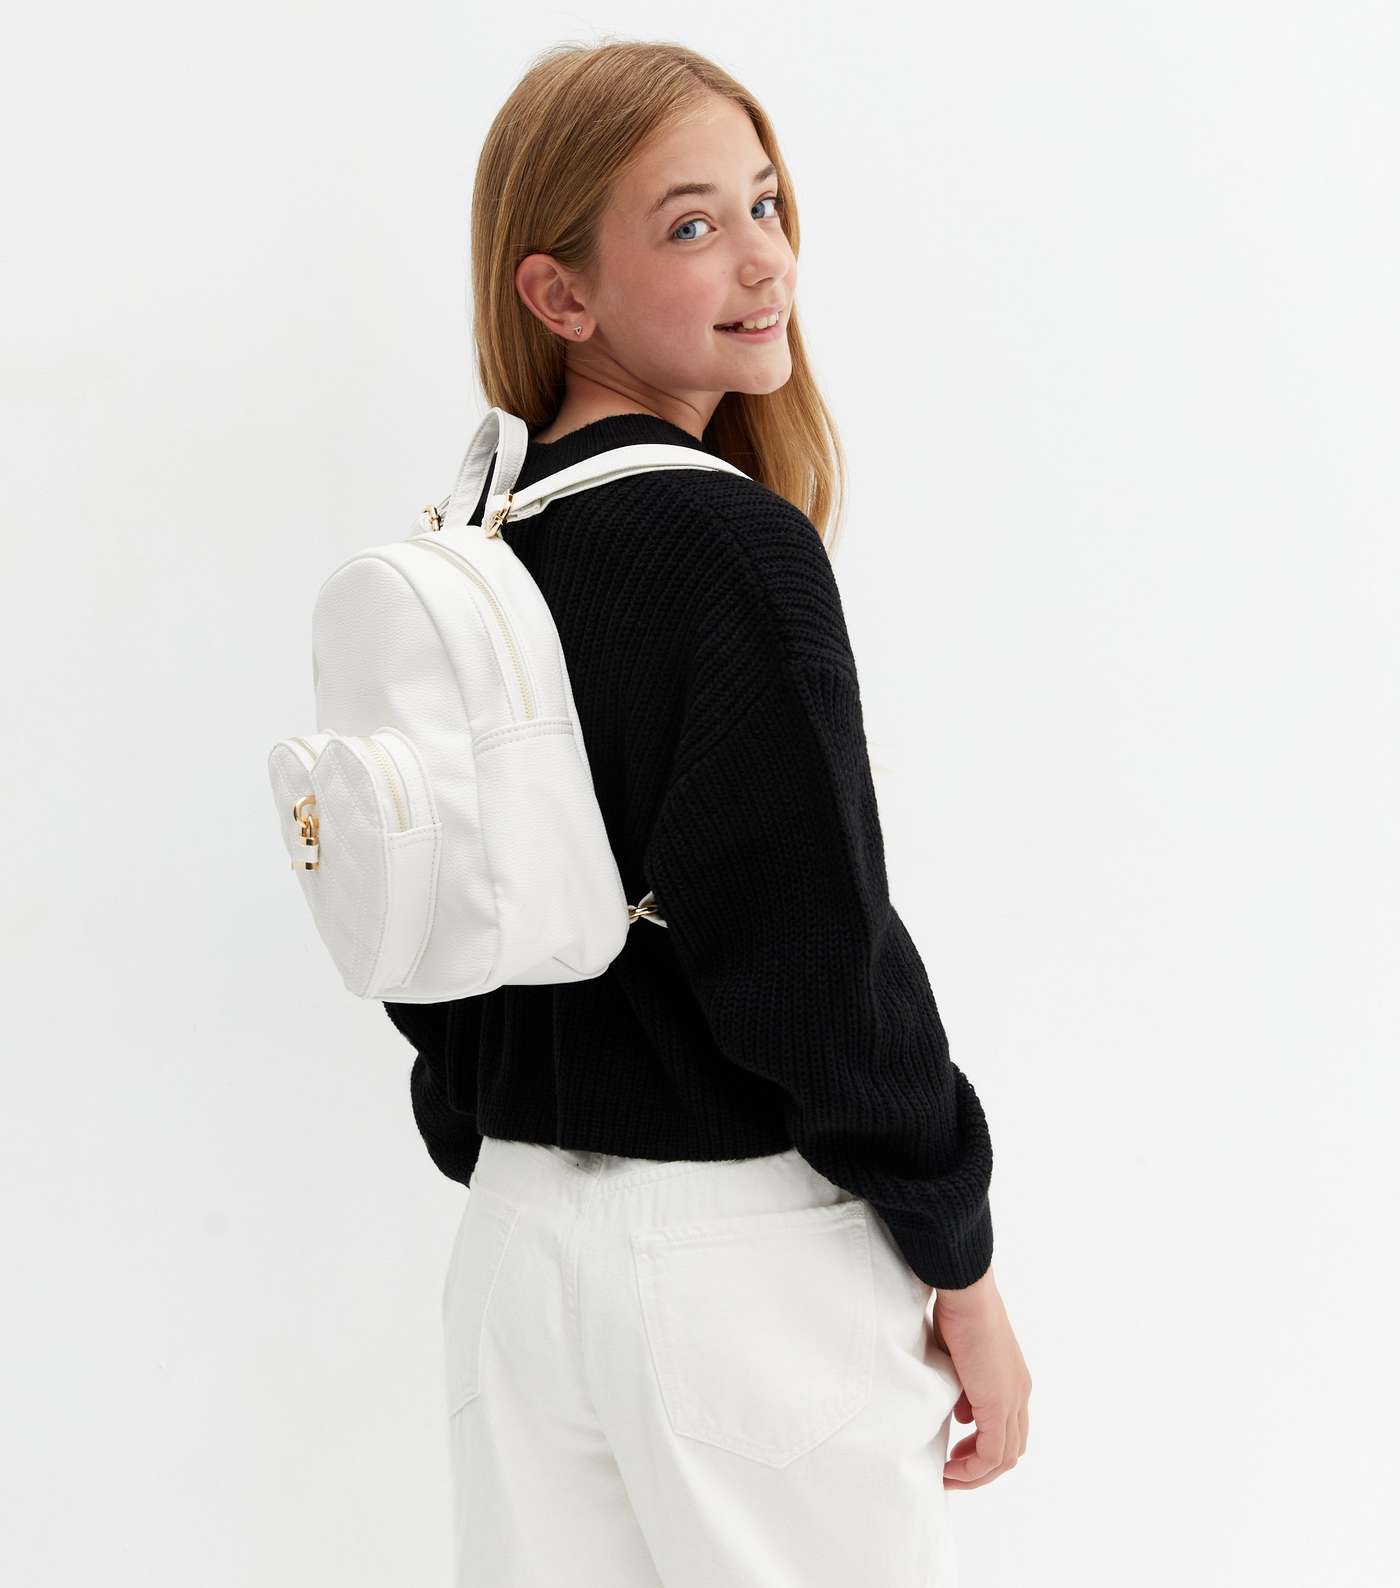 Girls White Heart Padlock Backpack Image 2